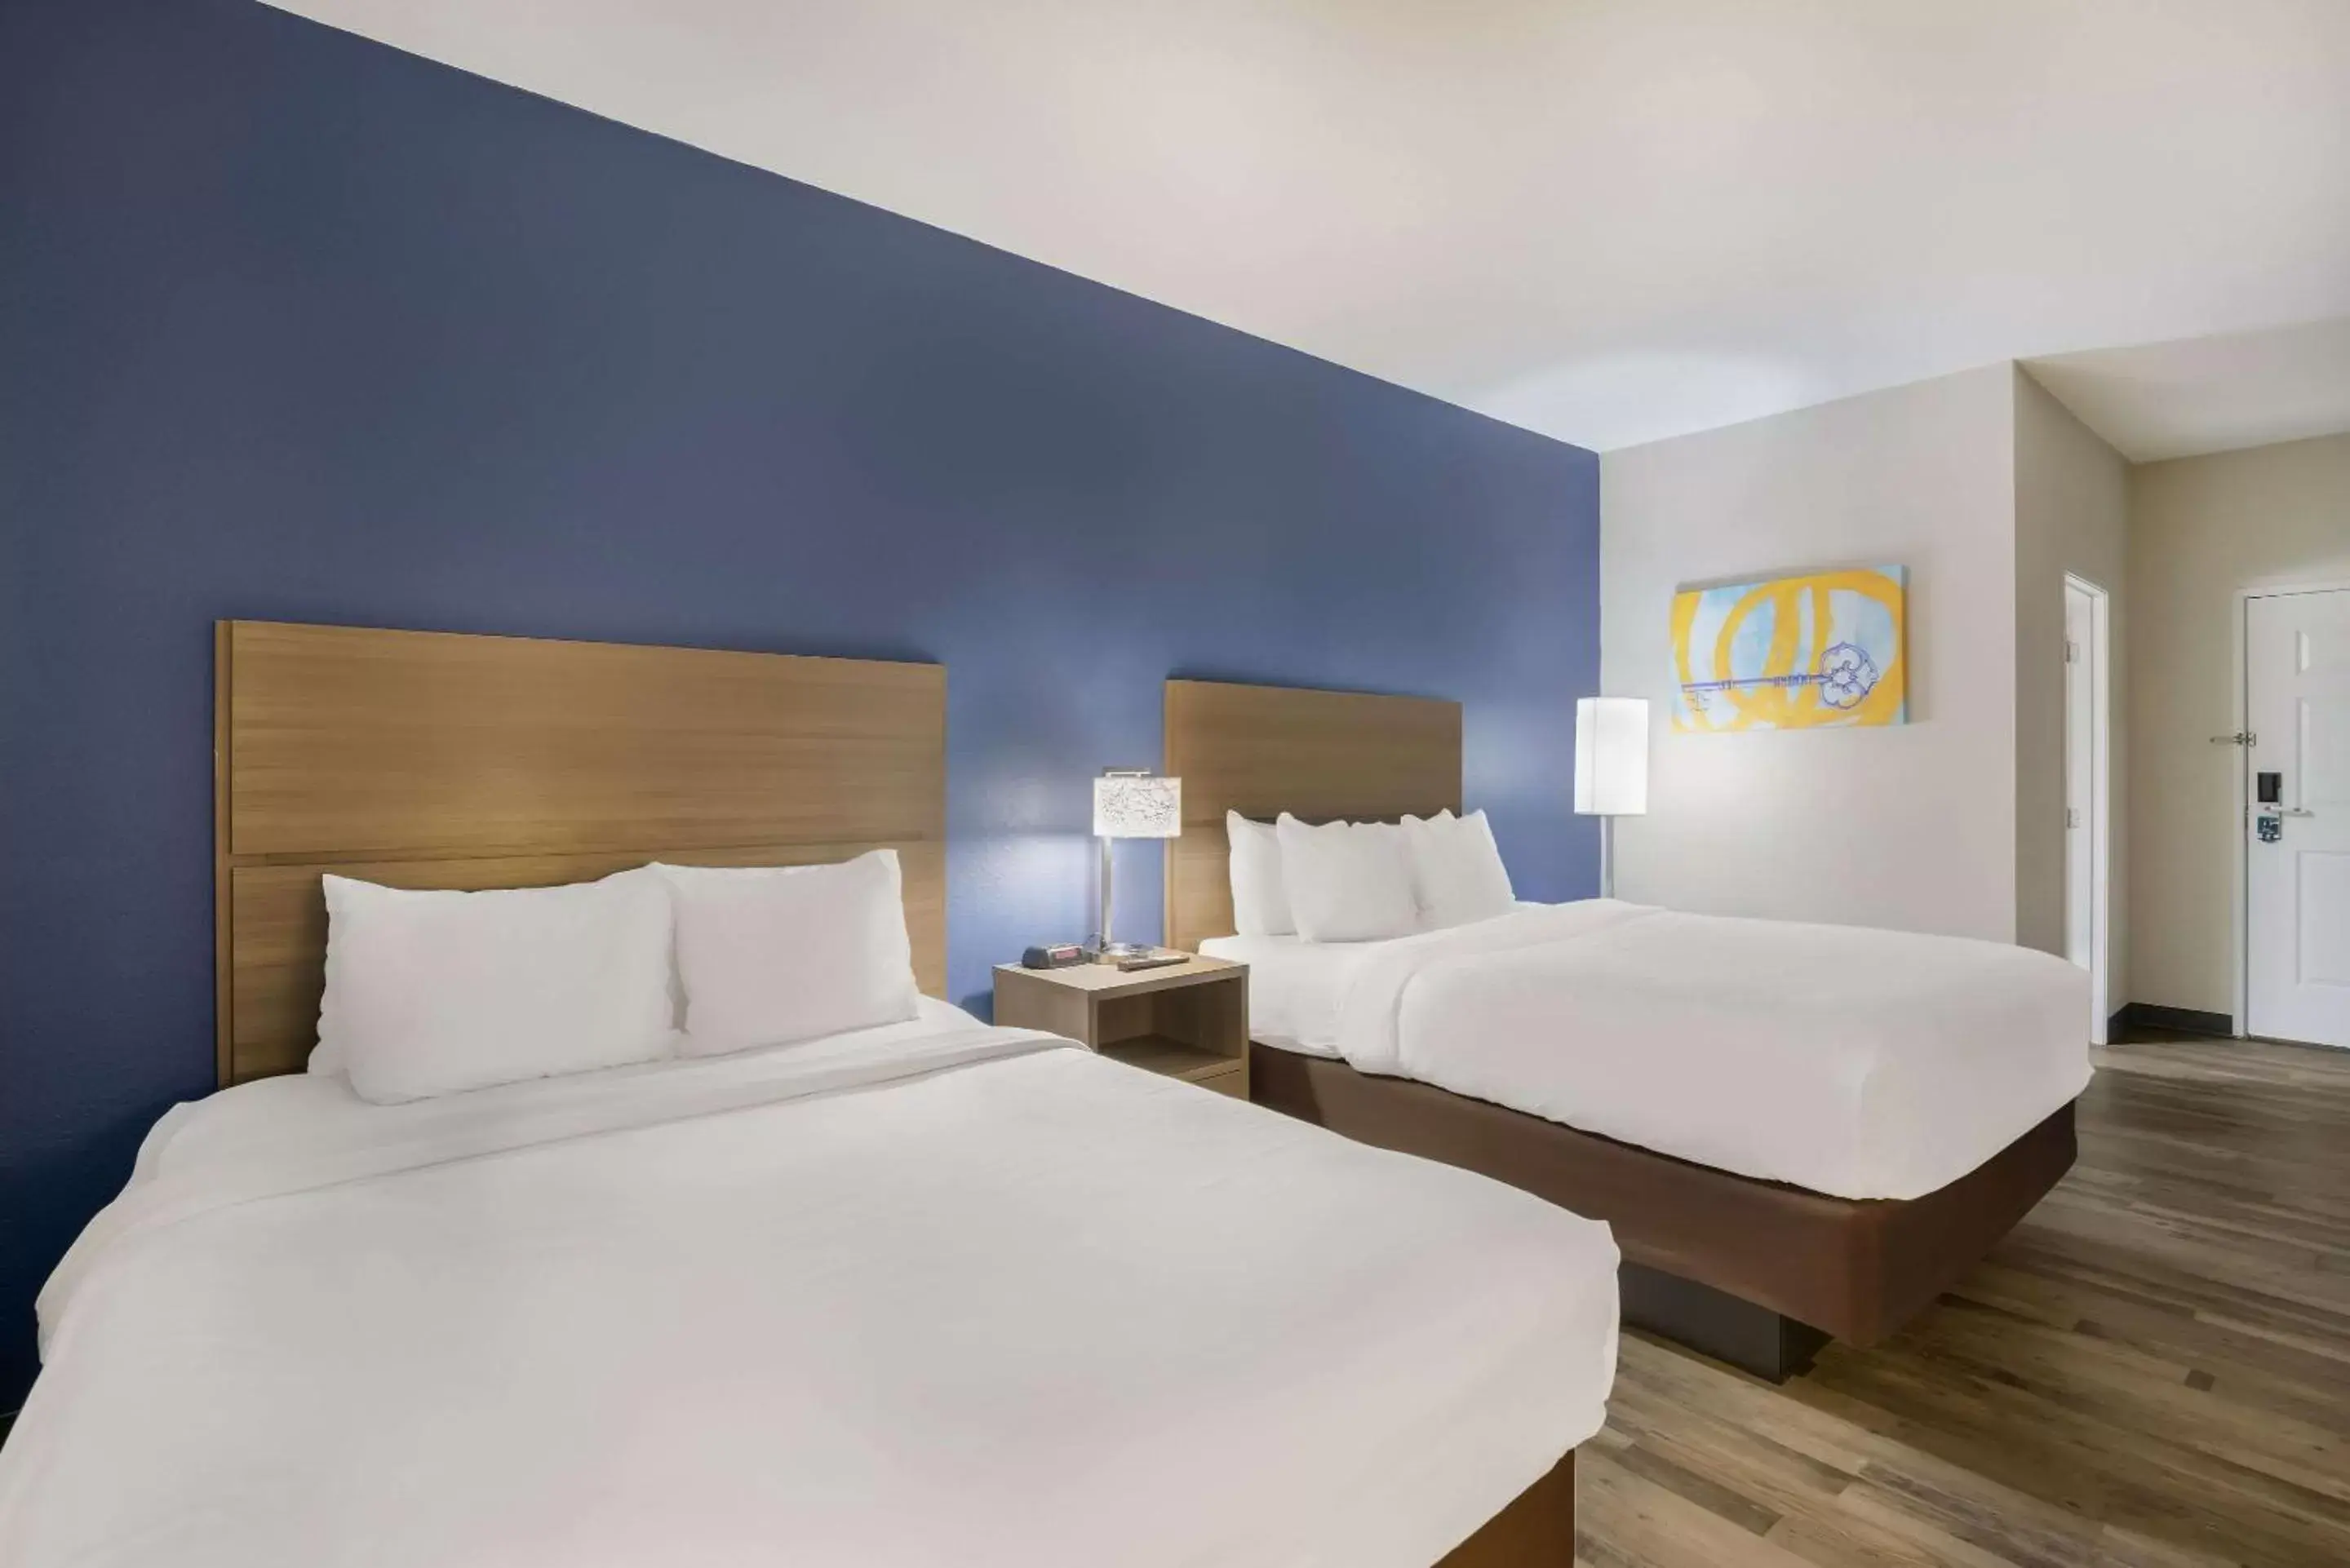 Bedroom, Bed in MainStay Suites Joliet I-55